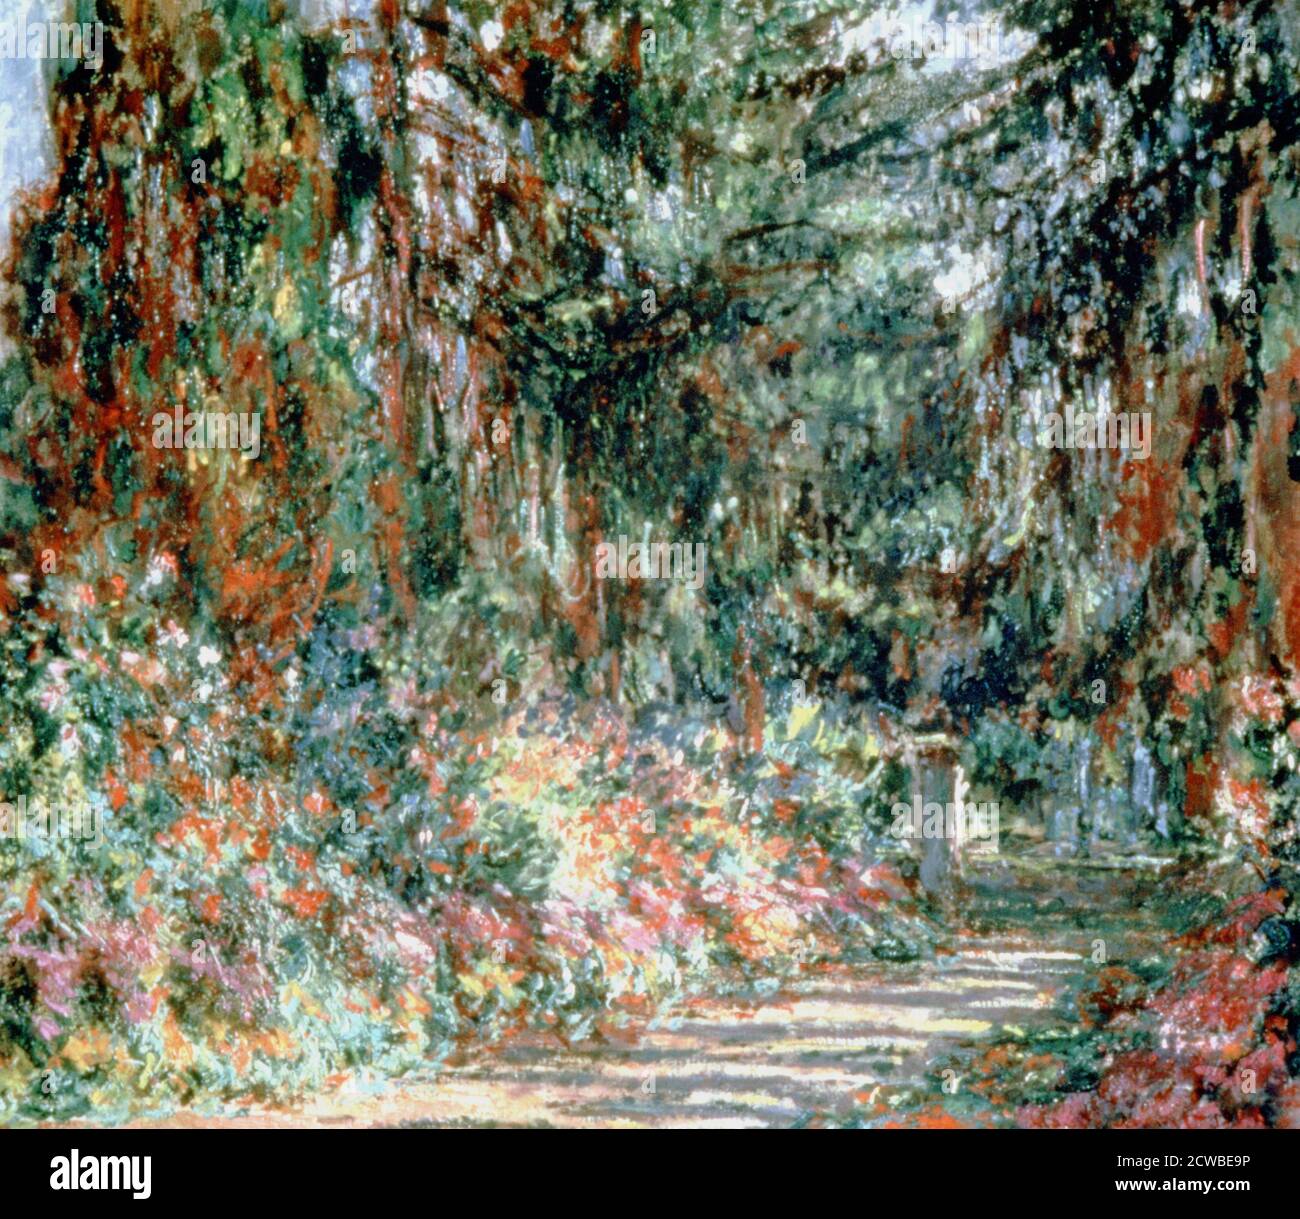 Jardin de Monet' c1880. Artiste: Claude Monet. Monet était un peintre français, un fondateur de la peinture impressionniste française et le praticien le plus cohérent et le plus prolifique de la philosophie des mouvements. Banque D'Images